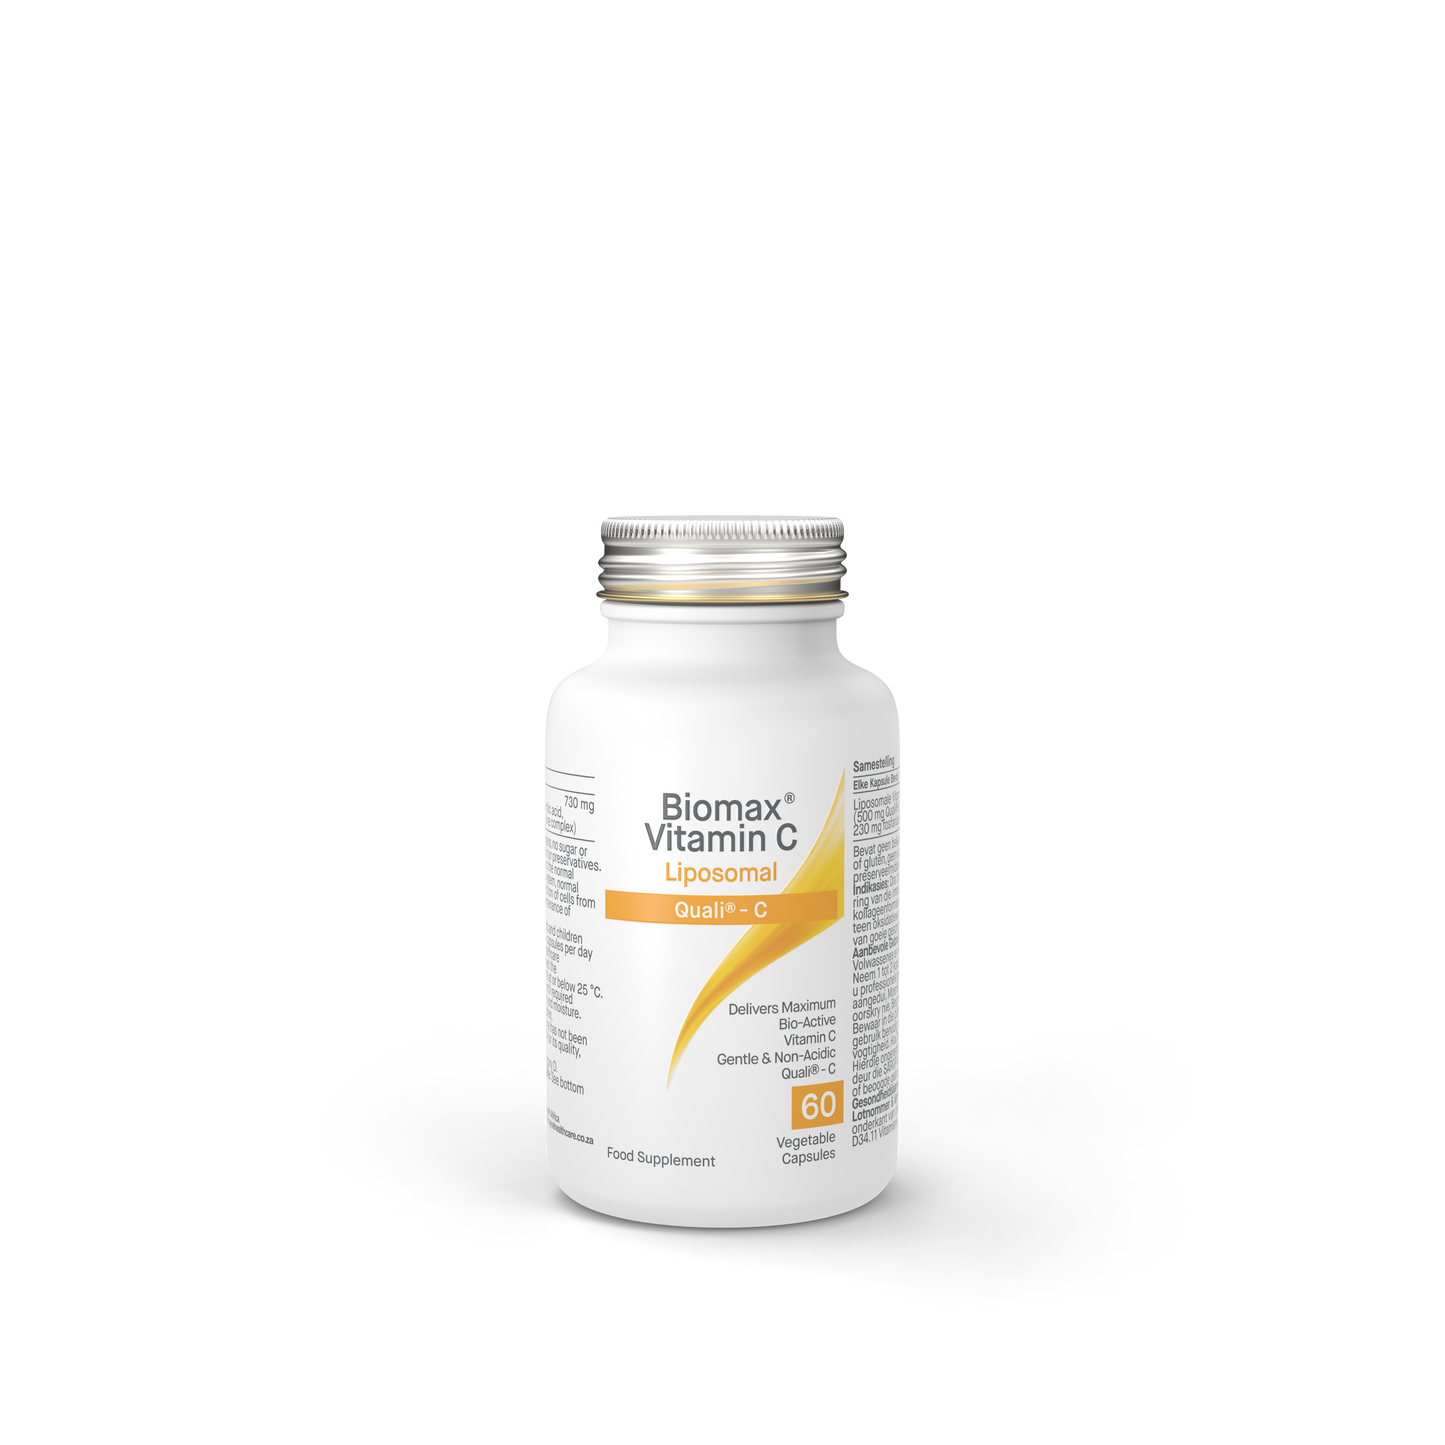 Biomax Vitamin C 720mg 60s 45517B